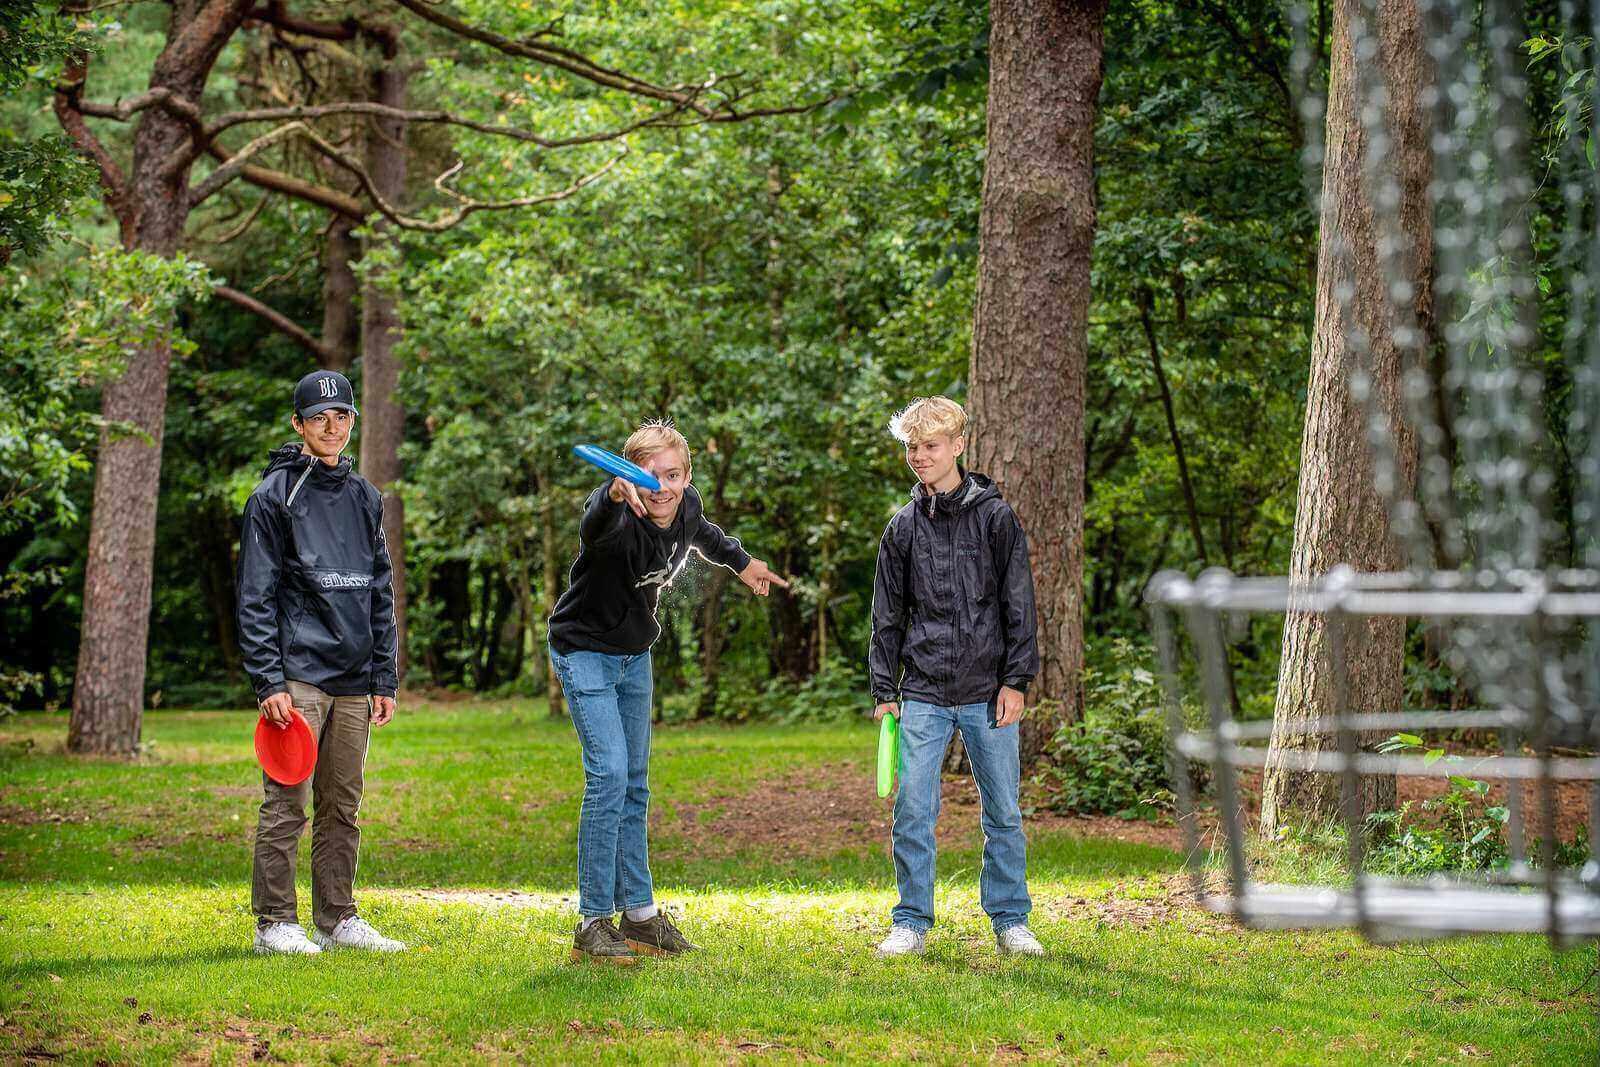 84 pct. af danskerne oplever, at ophold i naturen forbedrer deres humør og mentale sundhed. Naturen er for vigtig til at afhænge af ildsjæle, skriver Winni Grosbøll. Her nyder tre drenge foråret med frisbeegolf i Nørreskoven, Esbjerg.